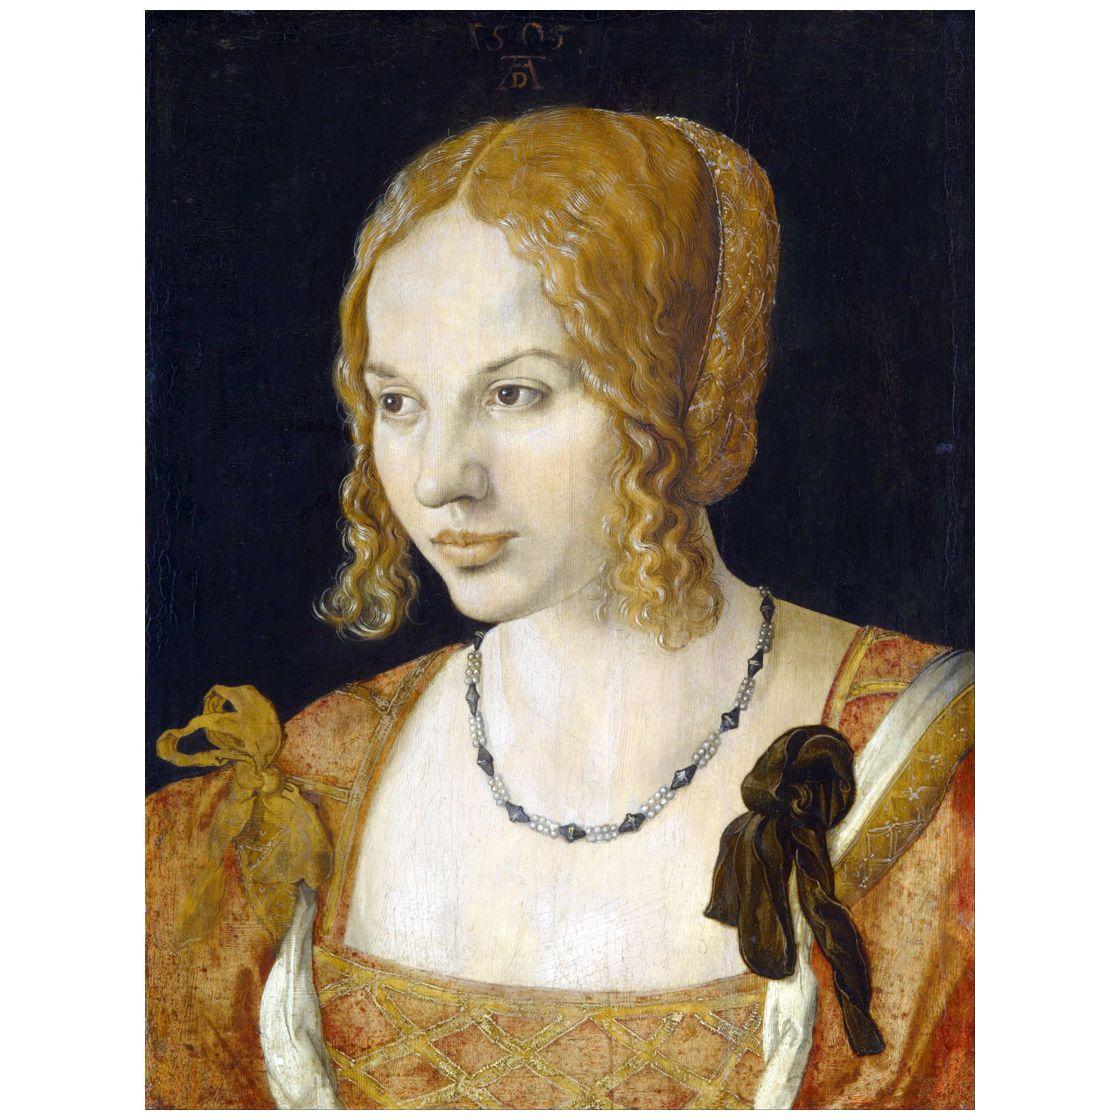 Albrecht Durer. Portrait of a Young Venetian Woman. 1505. Kunsthistorisches Museum Wien